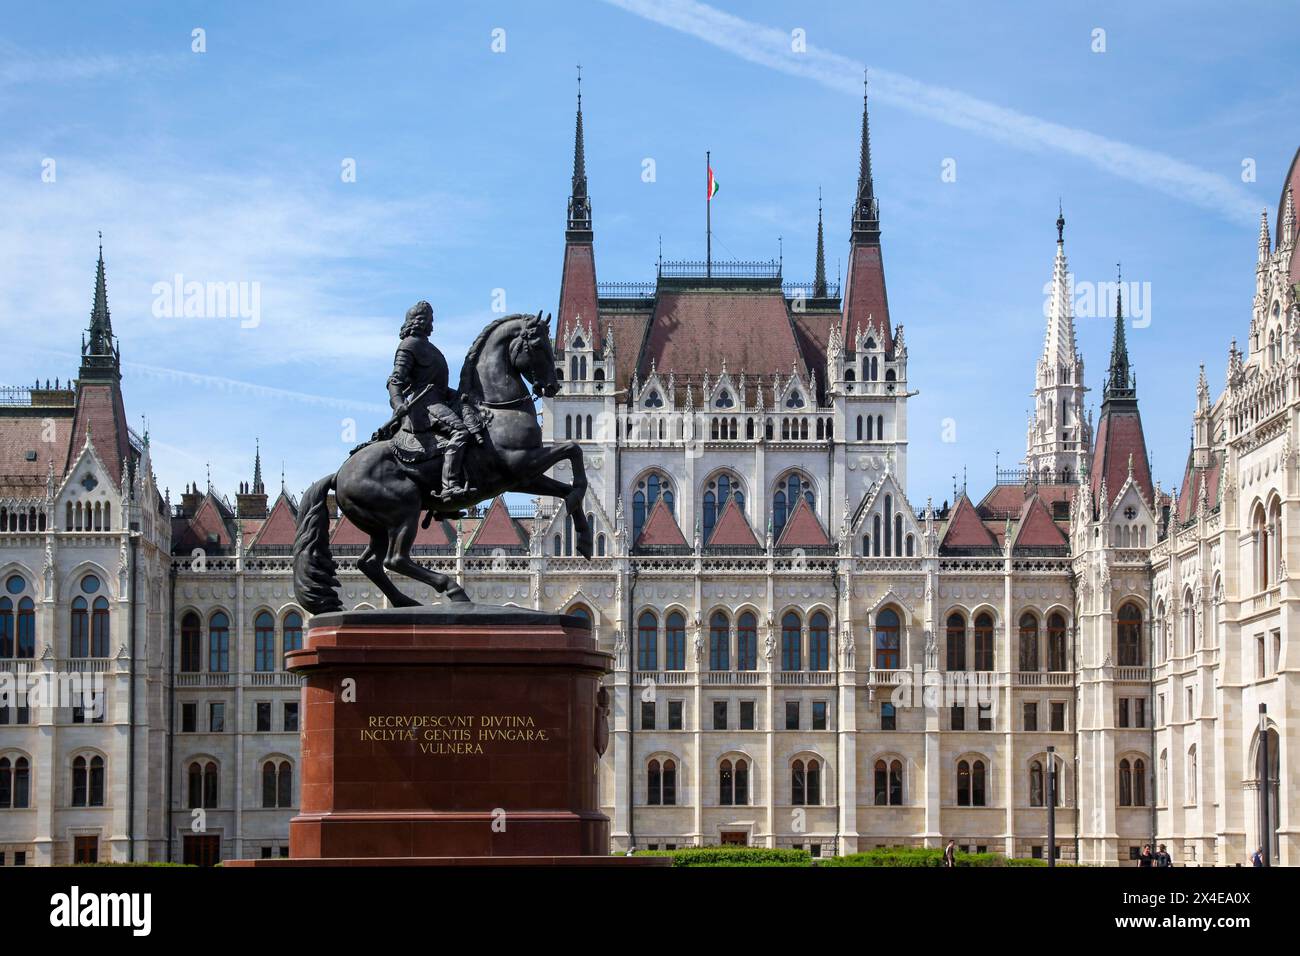 Statue équestre de Ferenc Rakocz devant le Parlement hongrois, un chef-d'œuvre de l'architecture gothique dans la ville de Budapest, Hongrie, Europe. Banque D'Images